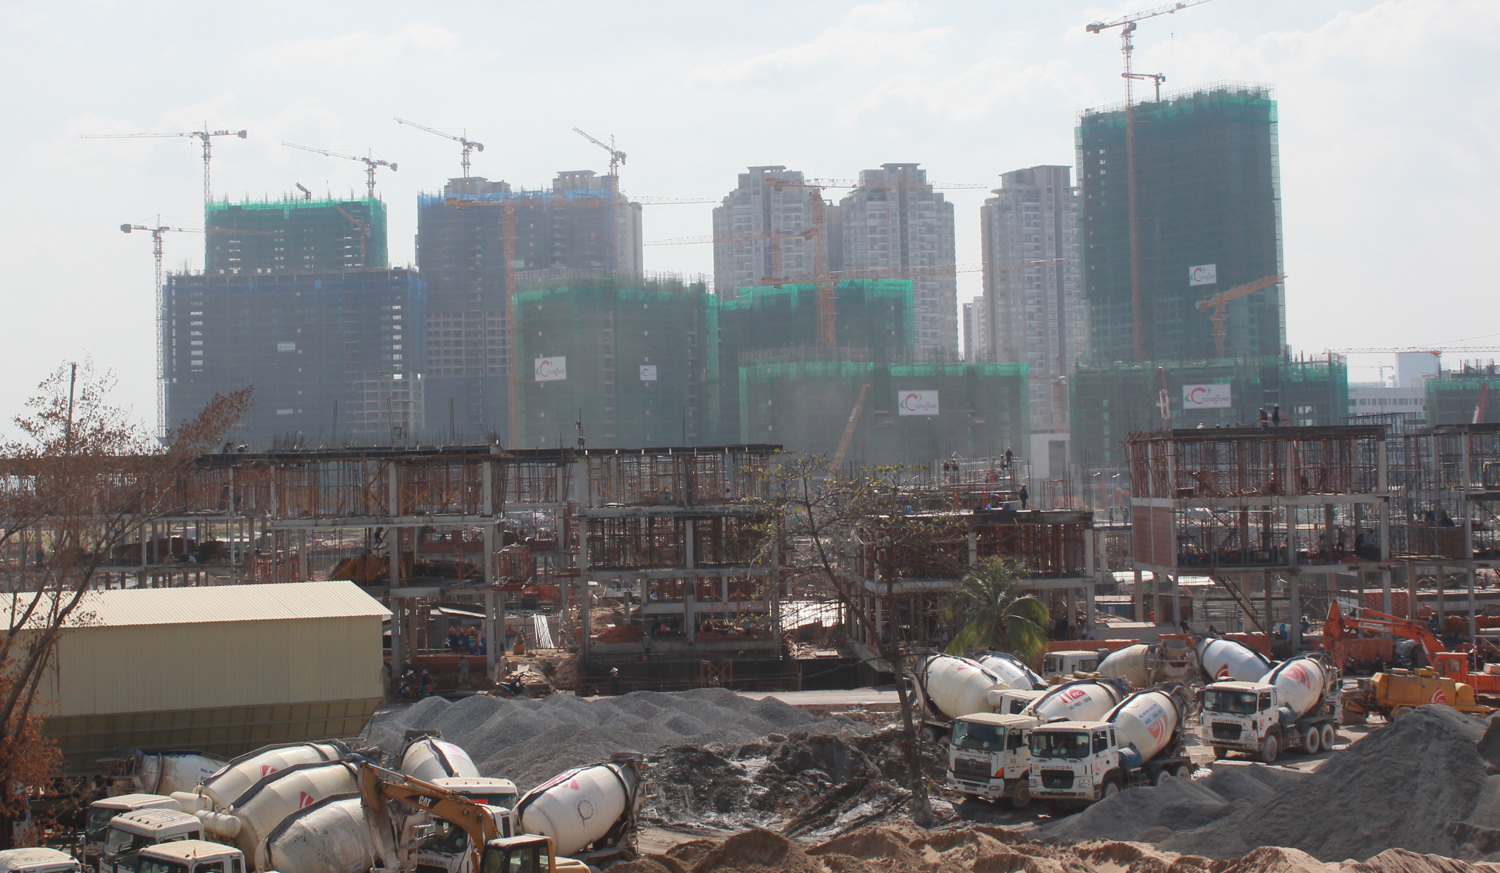 Dự án Vinhome với quy mô hàng ngàn căn hộ đang triển khai khá nhanh tại Q.Bình Thạnh, TP.HCM - Ảnh: Đ.Dân